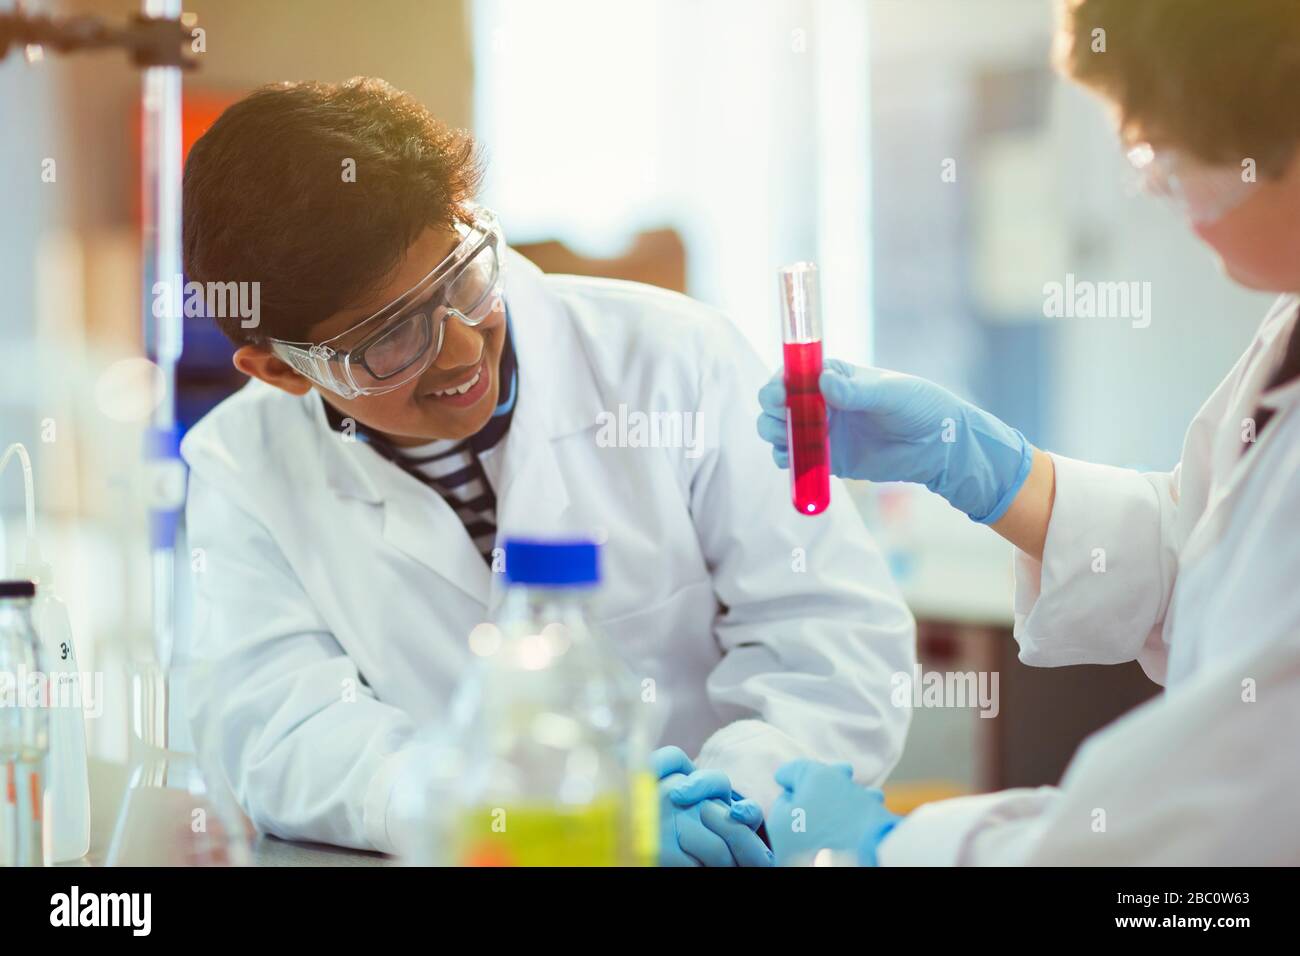 Élèves garçons examinant le liquide dans le tube à essai, menant des expériences scientifiques en salle de classe de laboratoire Banque D'Images